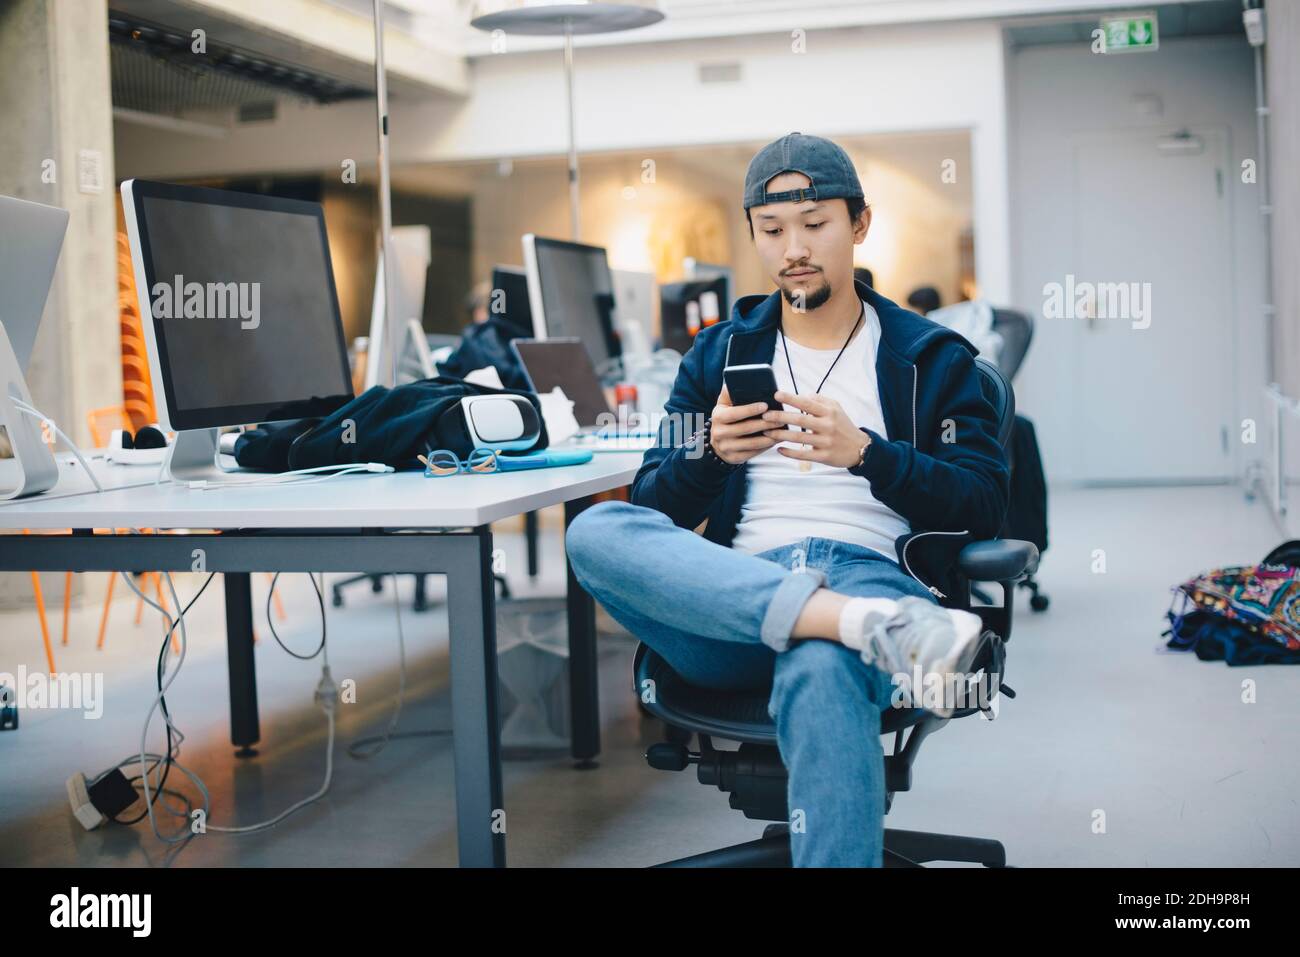 Programmeur d'ordinateur masculin utilisant un smartphone assis sur une chaise au bureau Banque D'Images